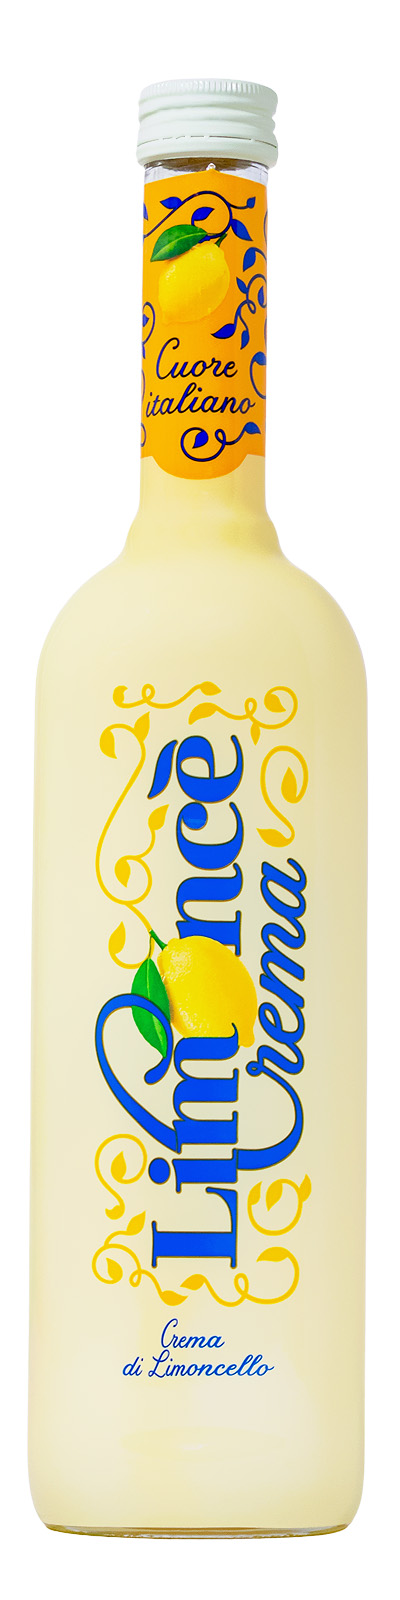 Crema di Limonce - 0,5L 25% vol